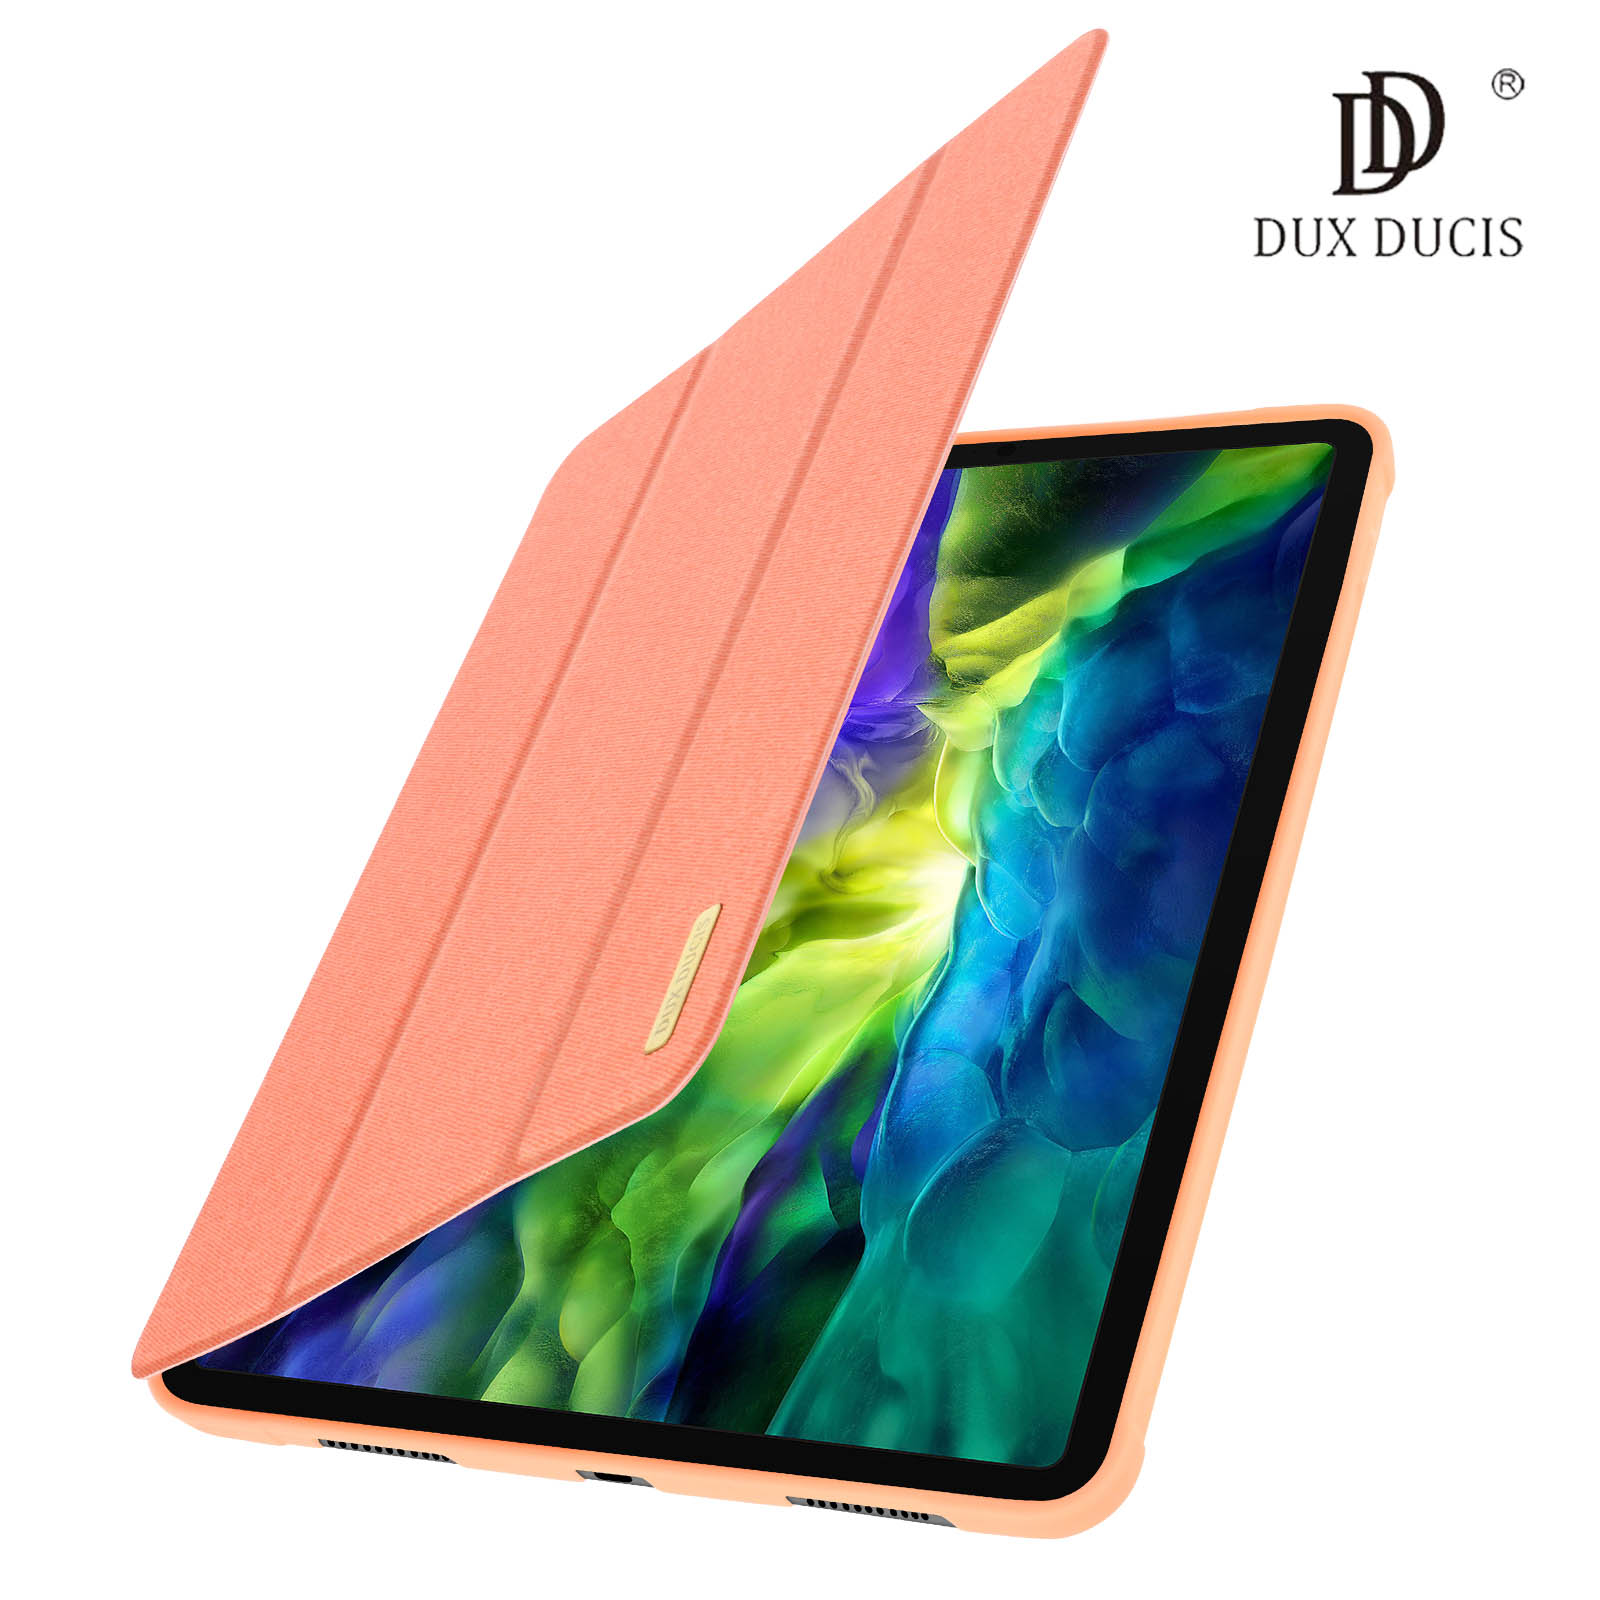 DUX DUCIS Funda para iPad Pro 11 2018 con Teclado y Teclado inalámbrico de 720° de rotación para Apple iPad Pro 11 